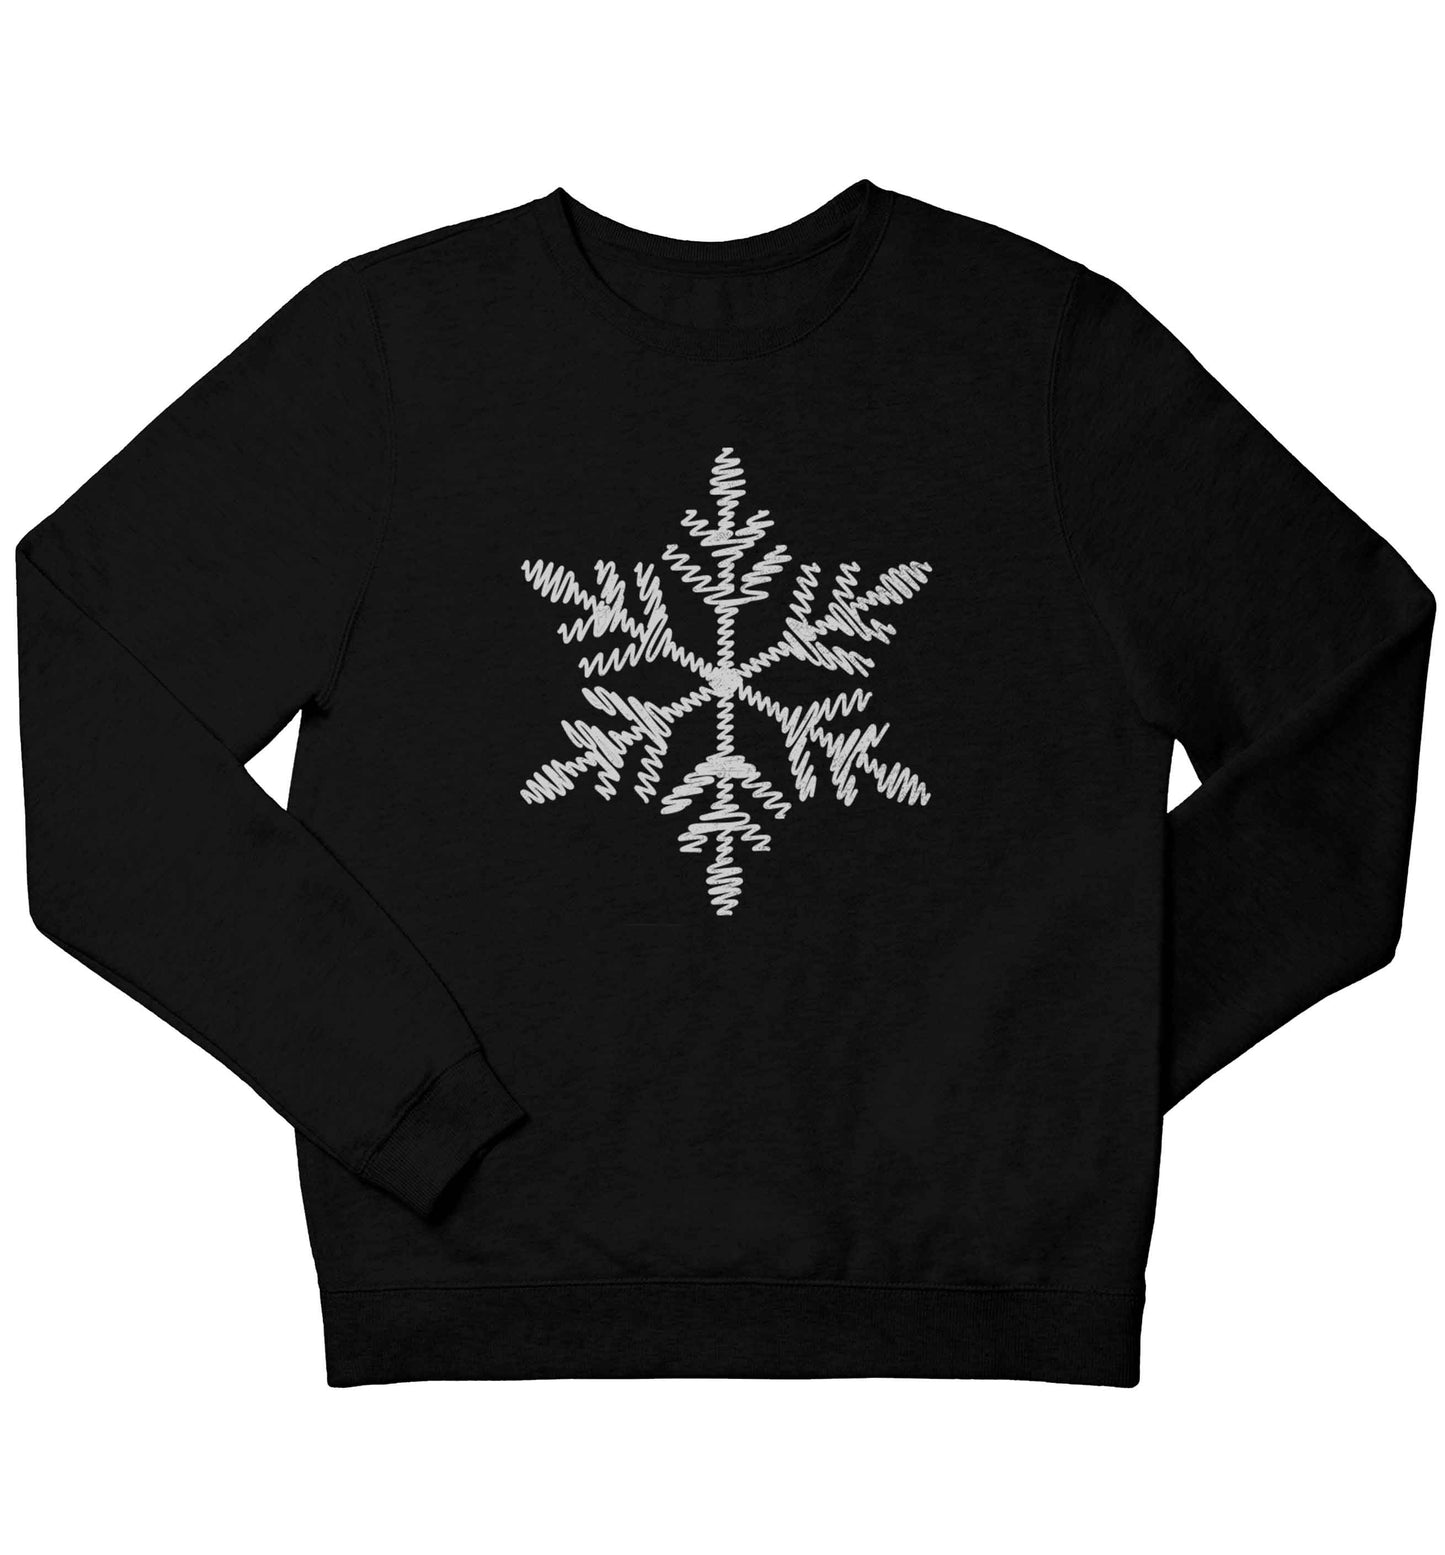 Snowflake children's black sweater 12-13 Years